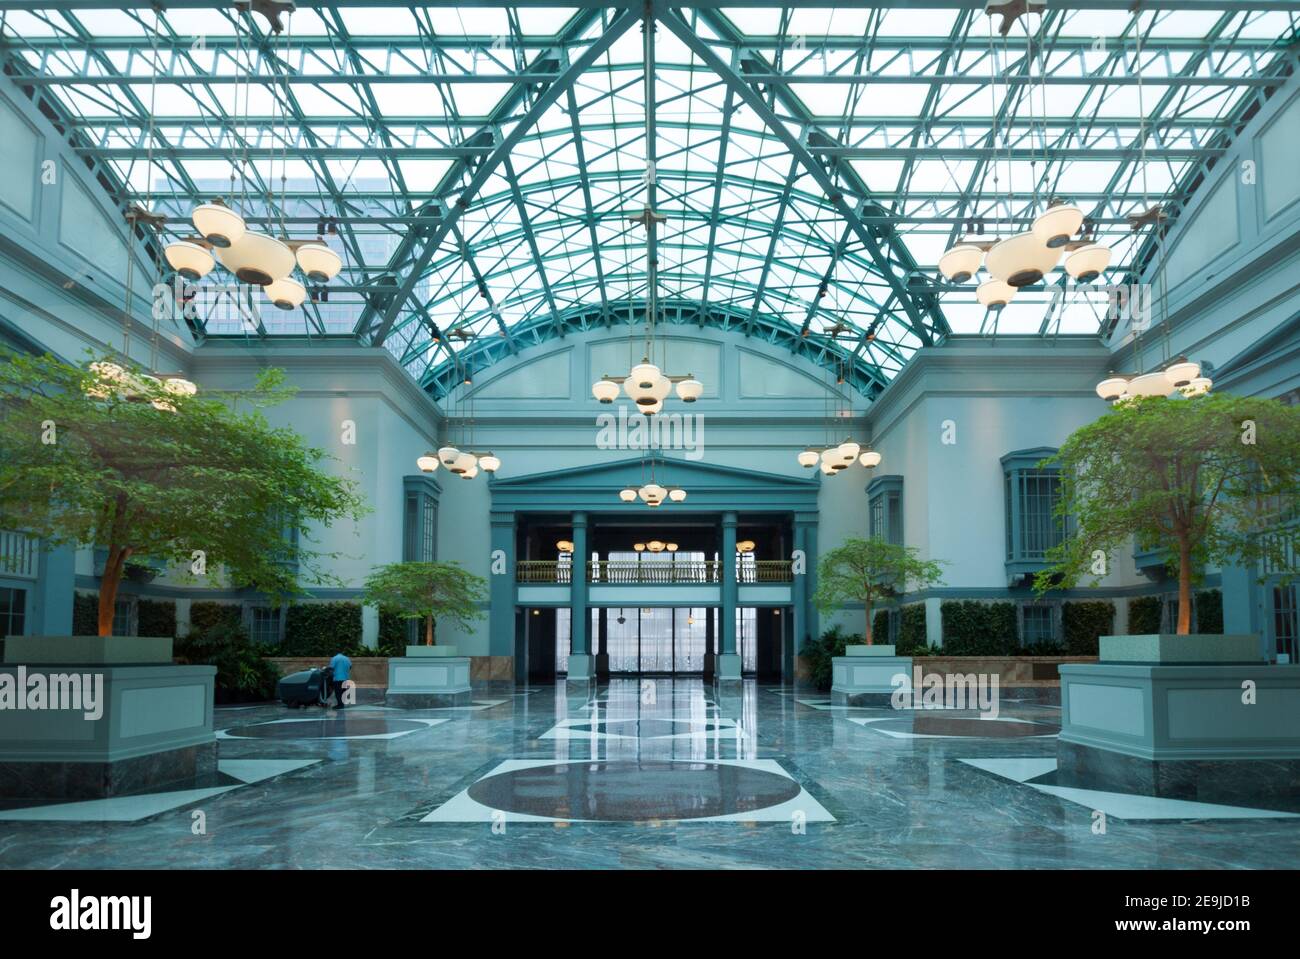 Le jardin d'hiver, le point fort architectural du Harold Washington Library Center à Chicago, Illinois. Banque D'Images